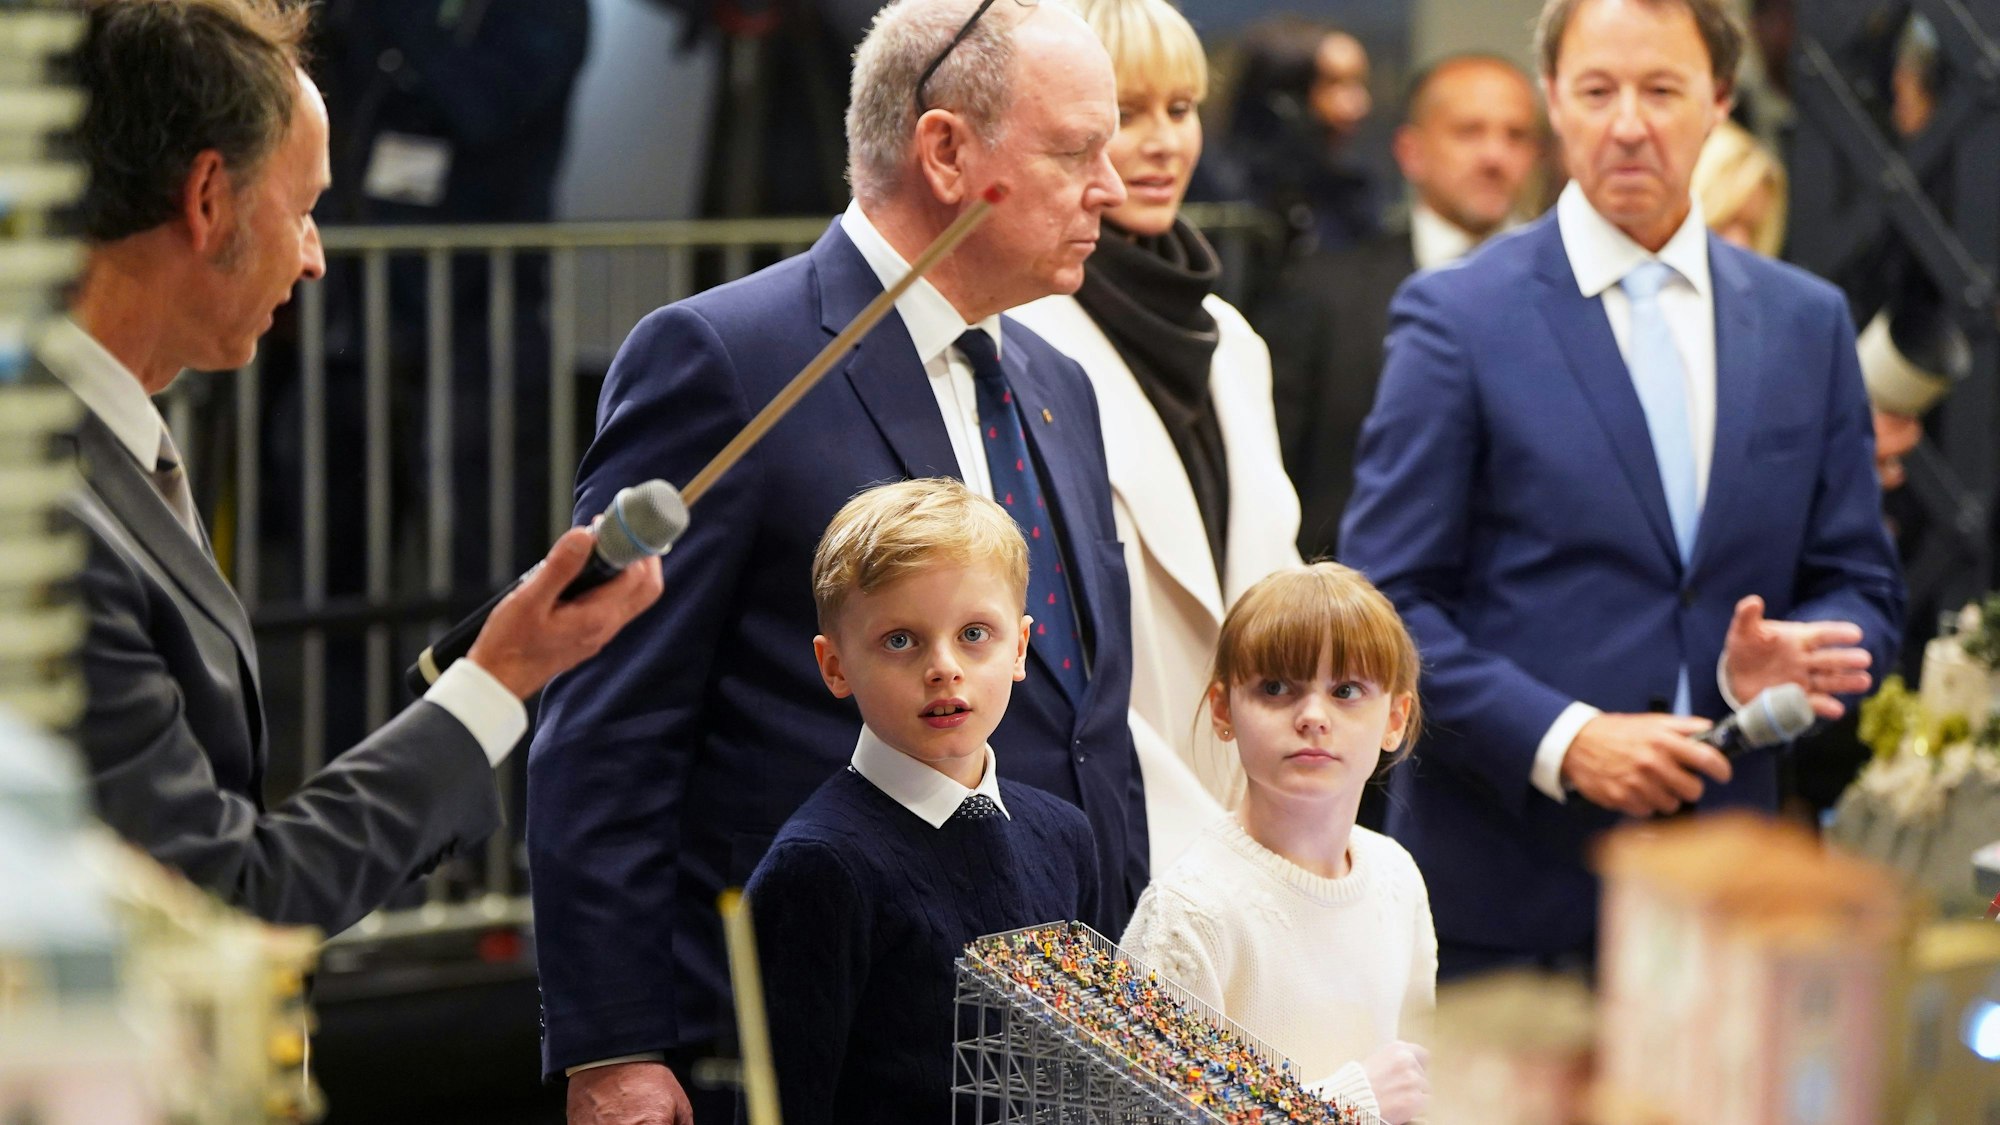 Fürst Albert II., Fürstin Charlène und die beiden Zwillinge Gabriella und Jacques während der Eröffnung der Monaco-Welt im Miniatur Wunderland.